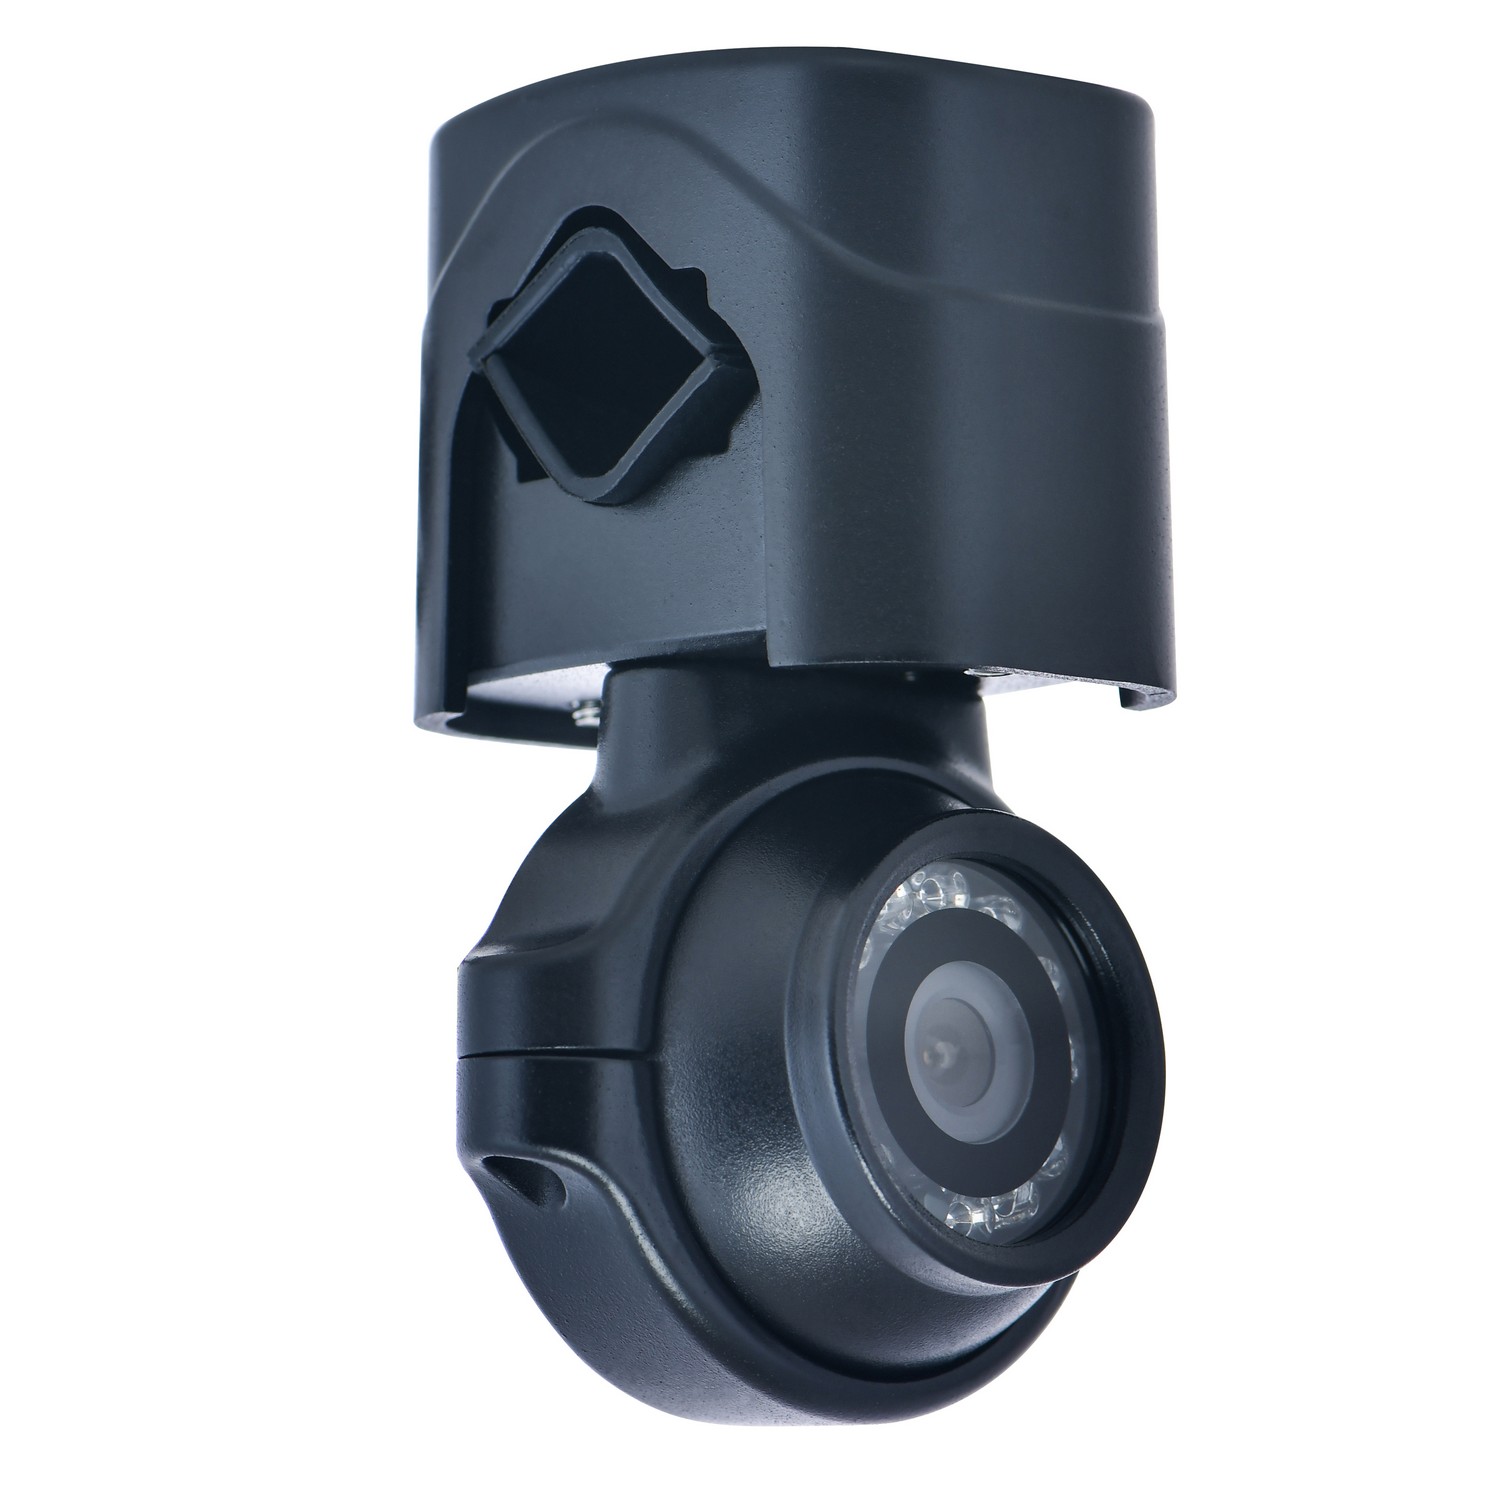 Camera ô tô chống nước IP69 với độ phân giải wdr + full hd